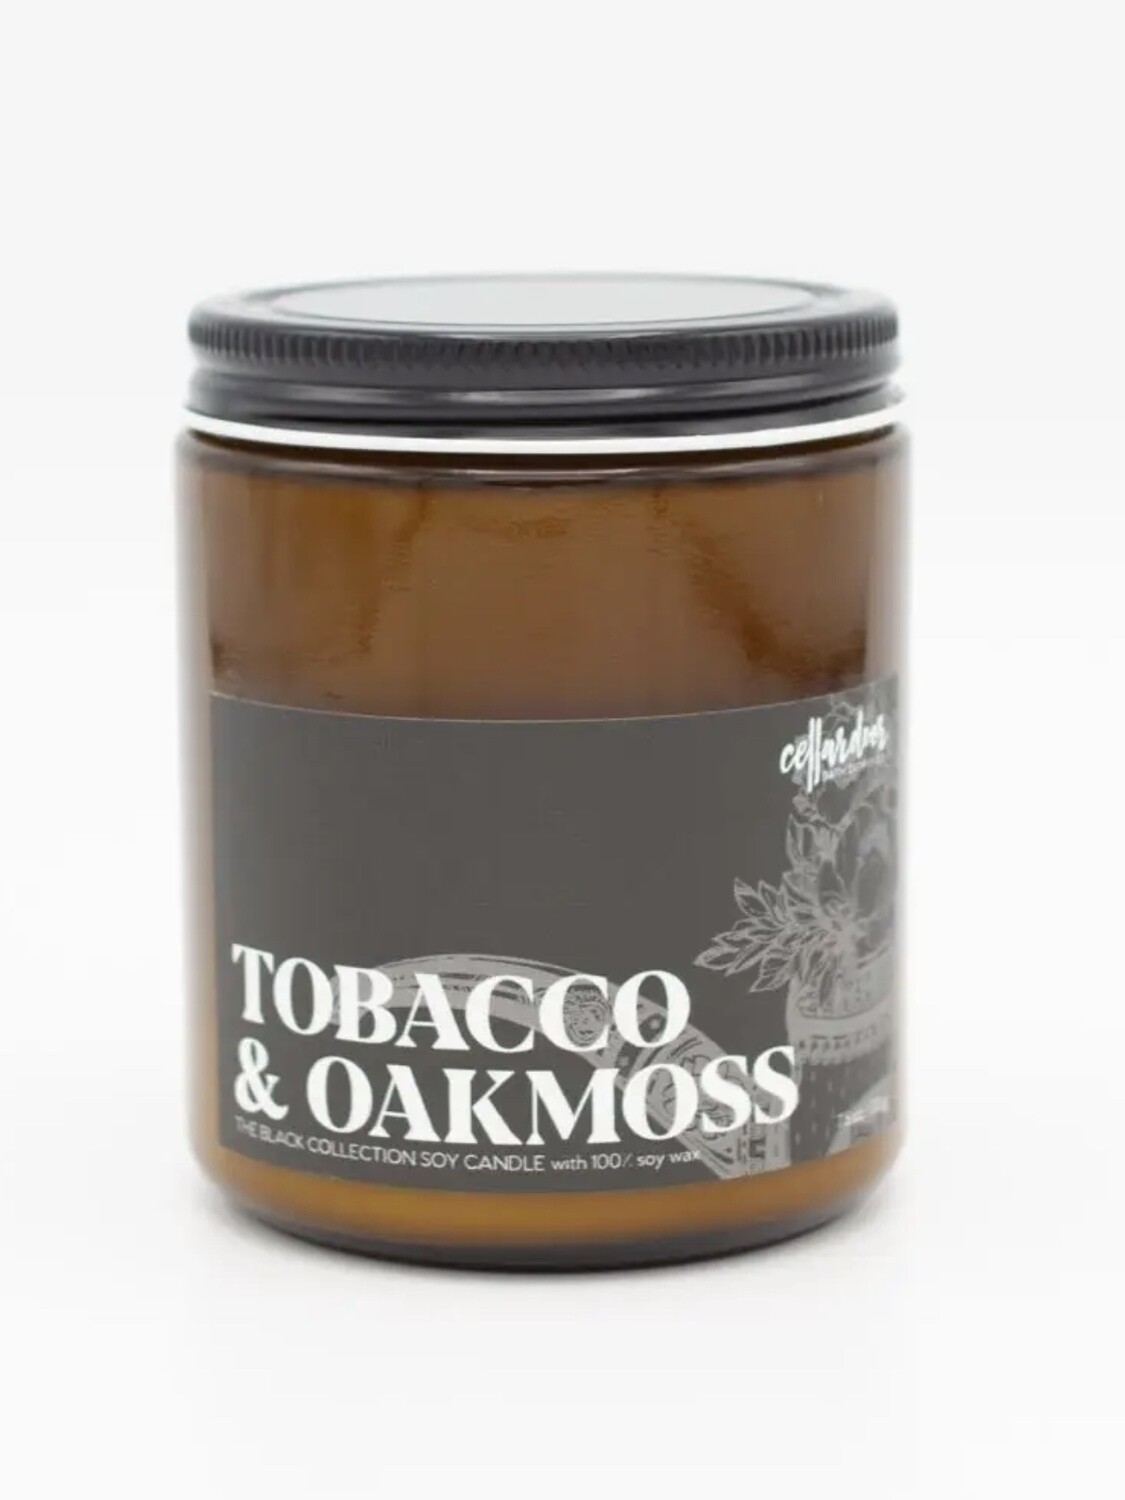 Tobacco & Oakmoss 7.5 oz Soy Candle 